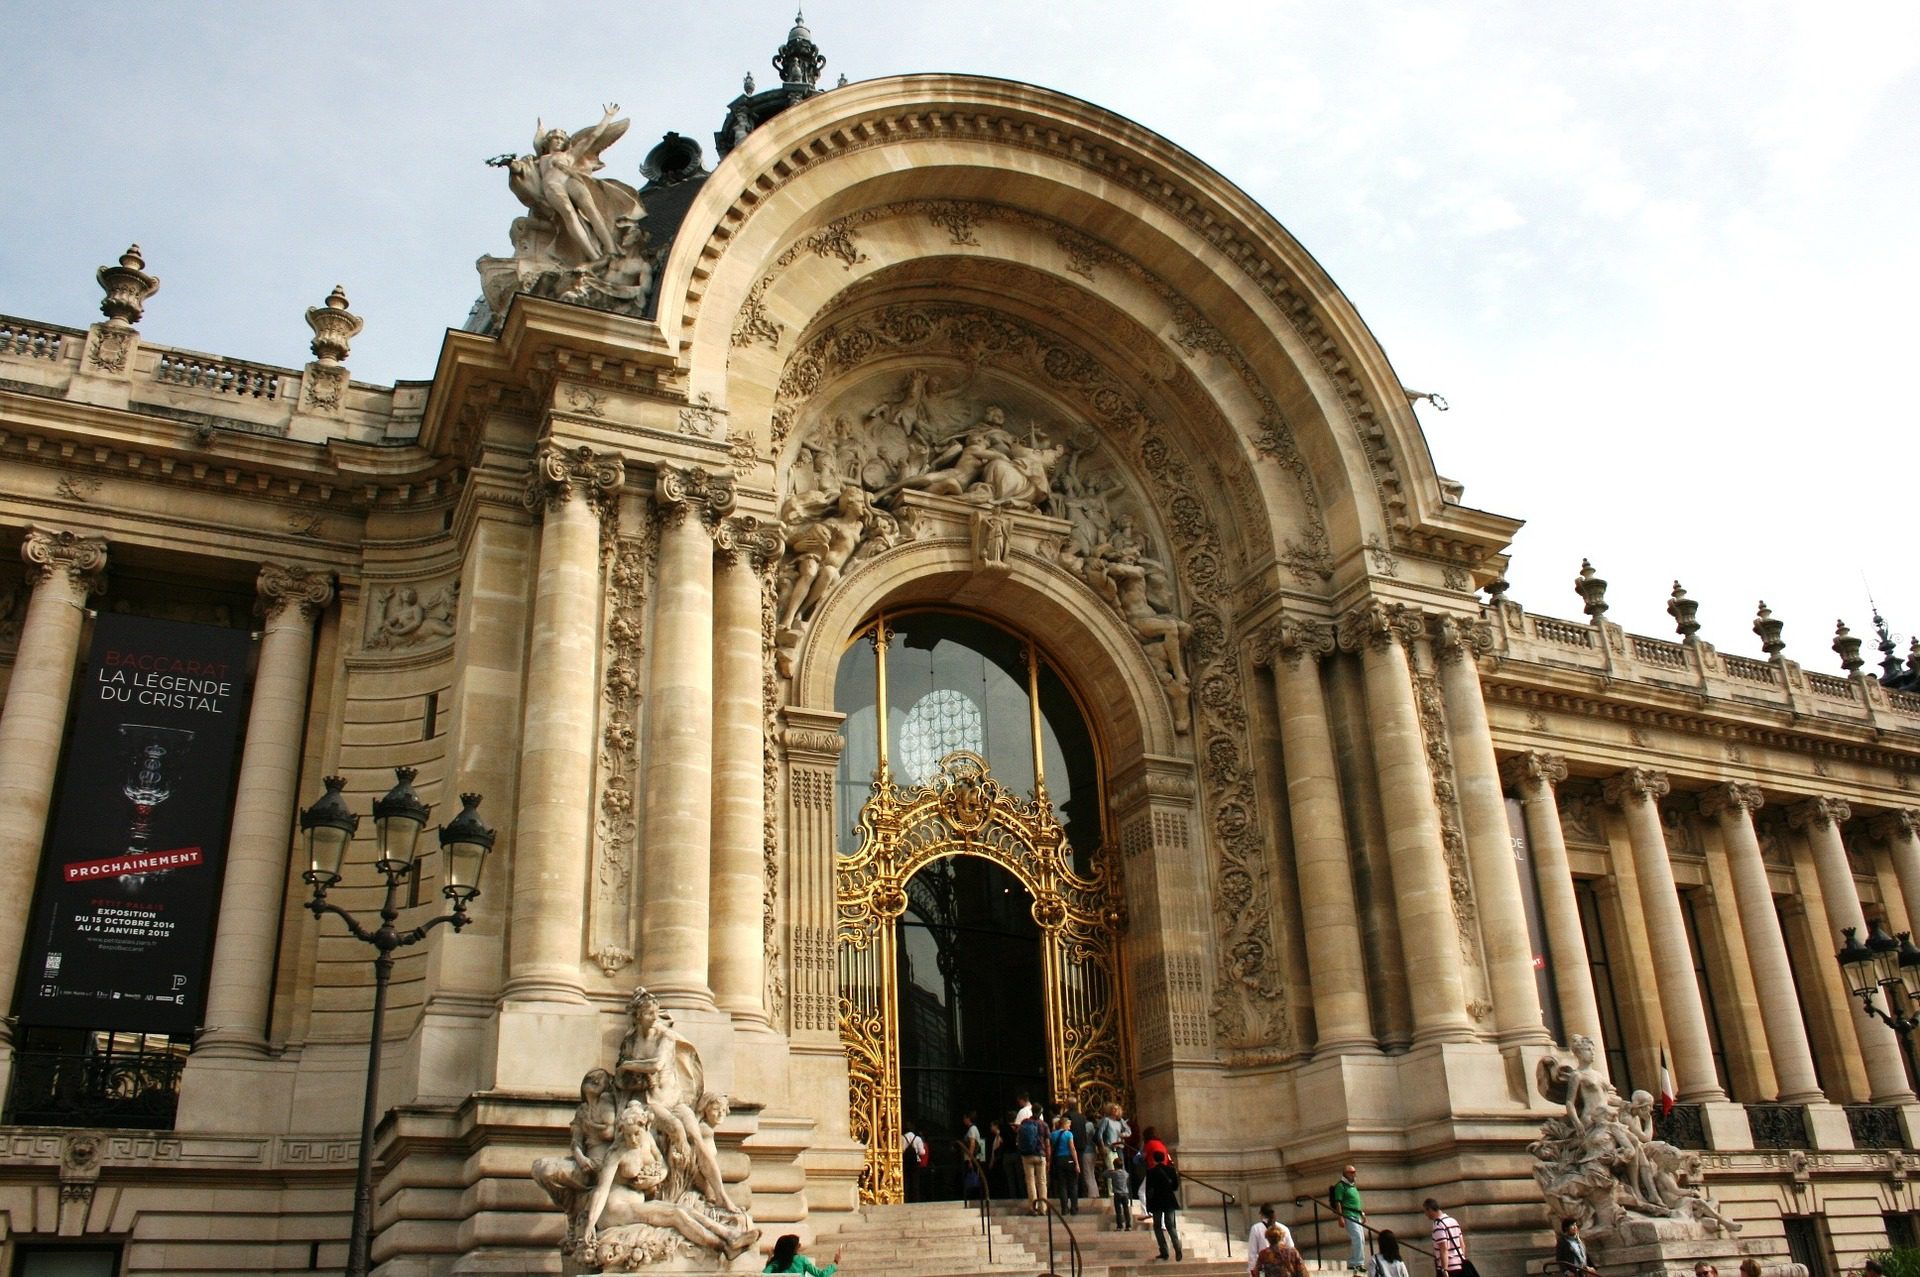 Le Petit Palace, Paris